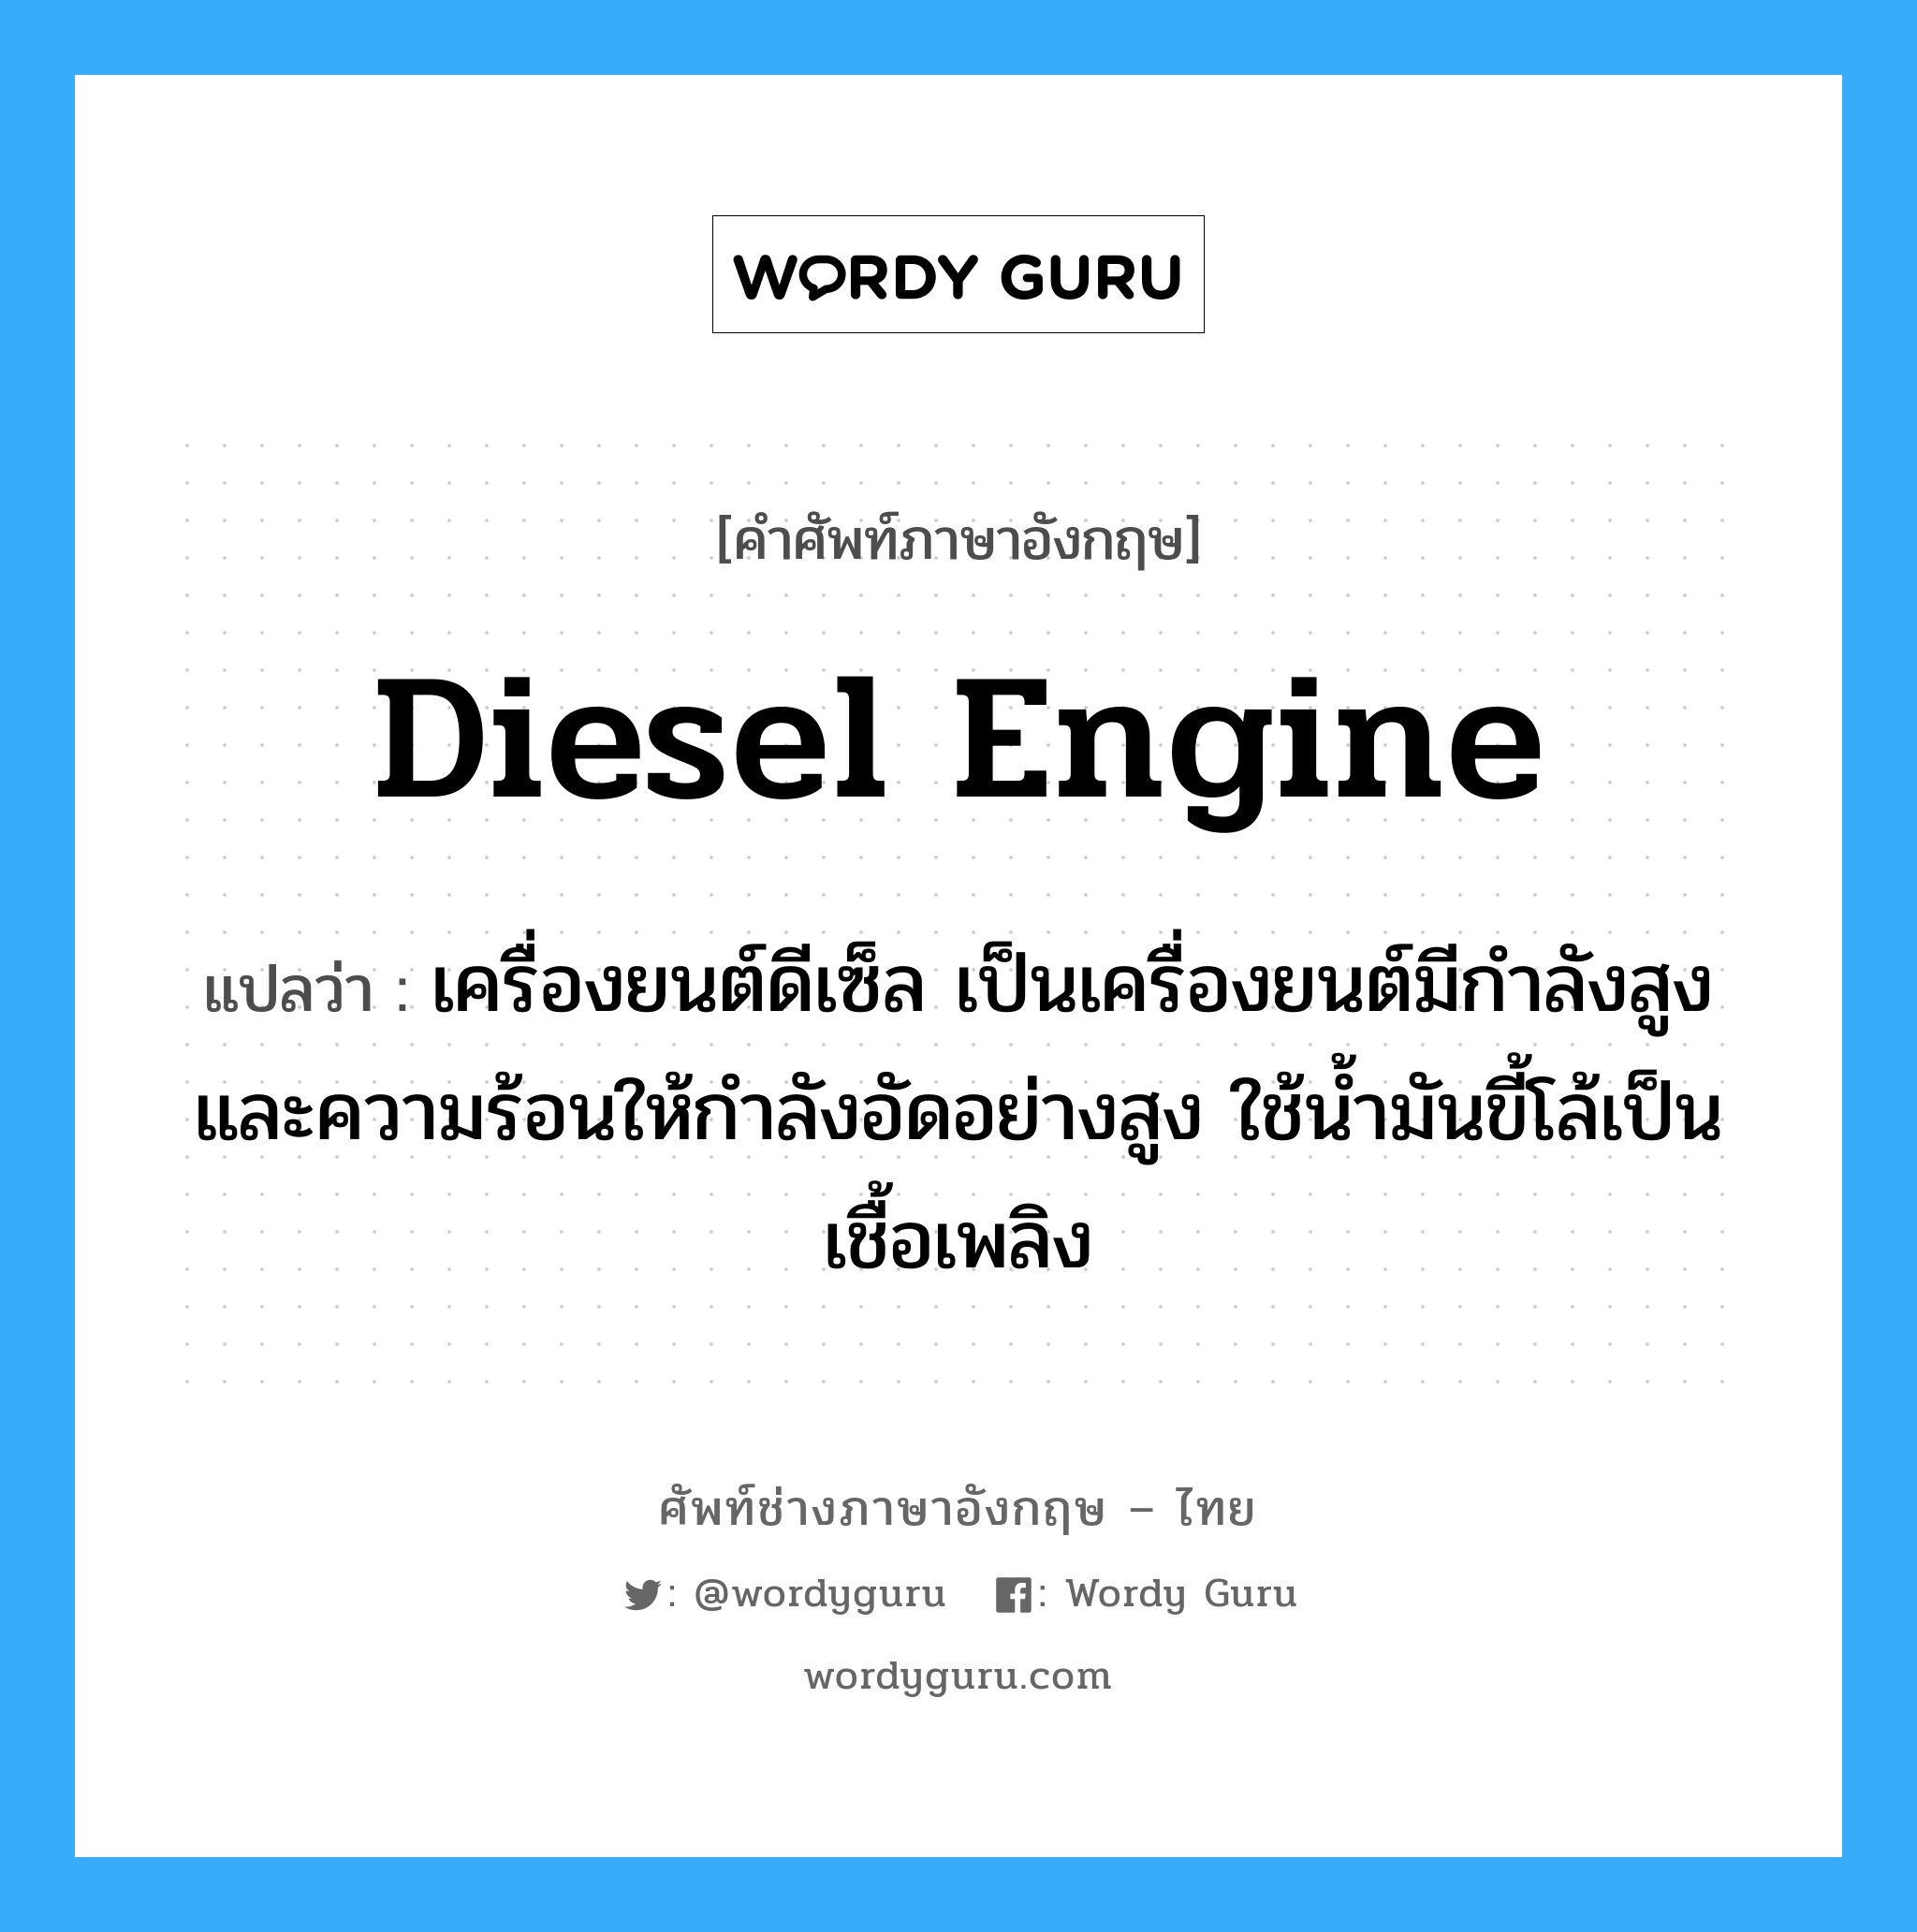 Diesel engine แปลว่า?, คำศัพท์ช่างภาษาอังกฤษ - ไทย Diesel engine คำศัพท์ภาษาอังกฤษ Diesel engine แปลว่า เครื่องยนต์ดีเซ็ล เป็นเครื่องยนต์มีกำลังสูง และความร้อนให้กำลังอัดอย่างสูง ใช้น้ำมันขี้โล้เป็นเชื้อเพลิง